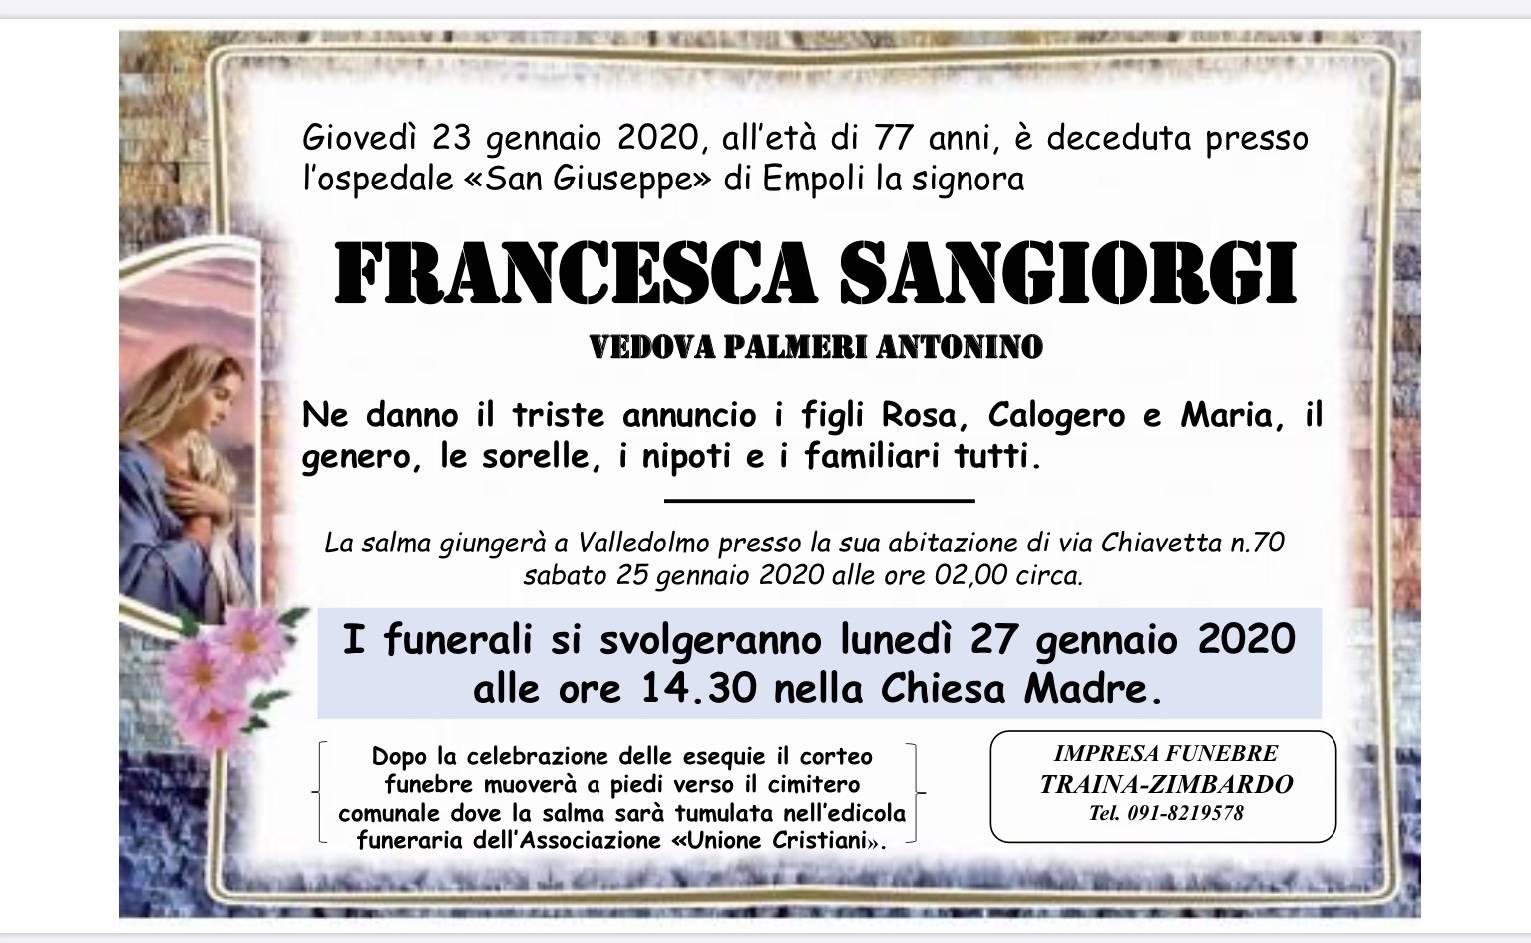 Francesca Sangiorgi